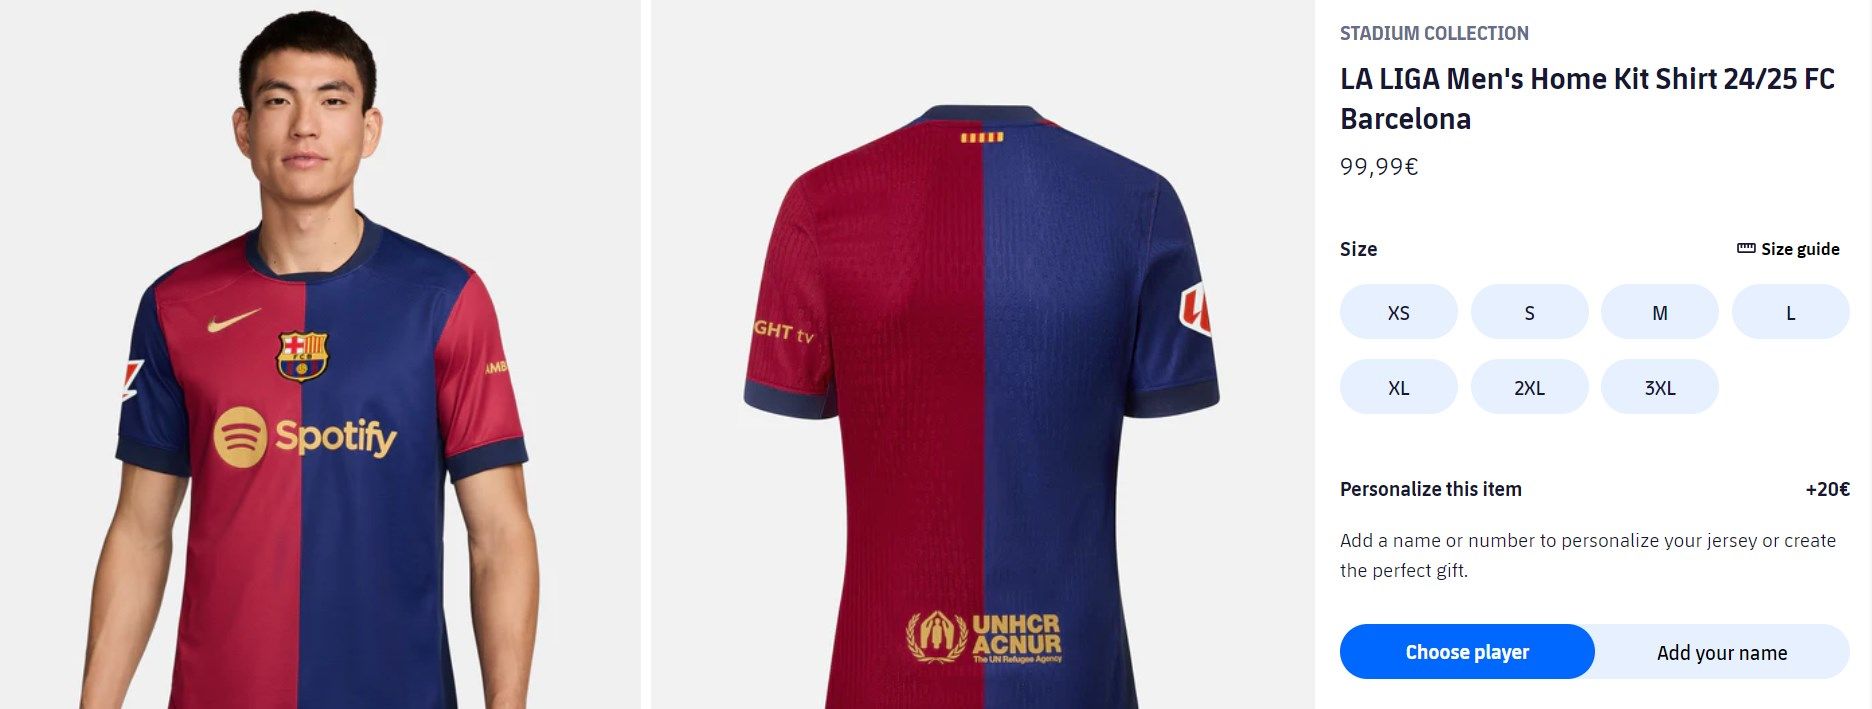 巴萨24/25赛季球衣终于发布 采用红蓝对半 队徽居中设计